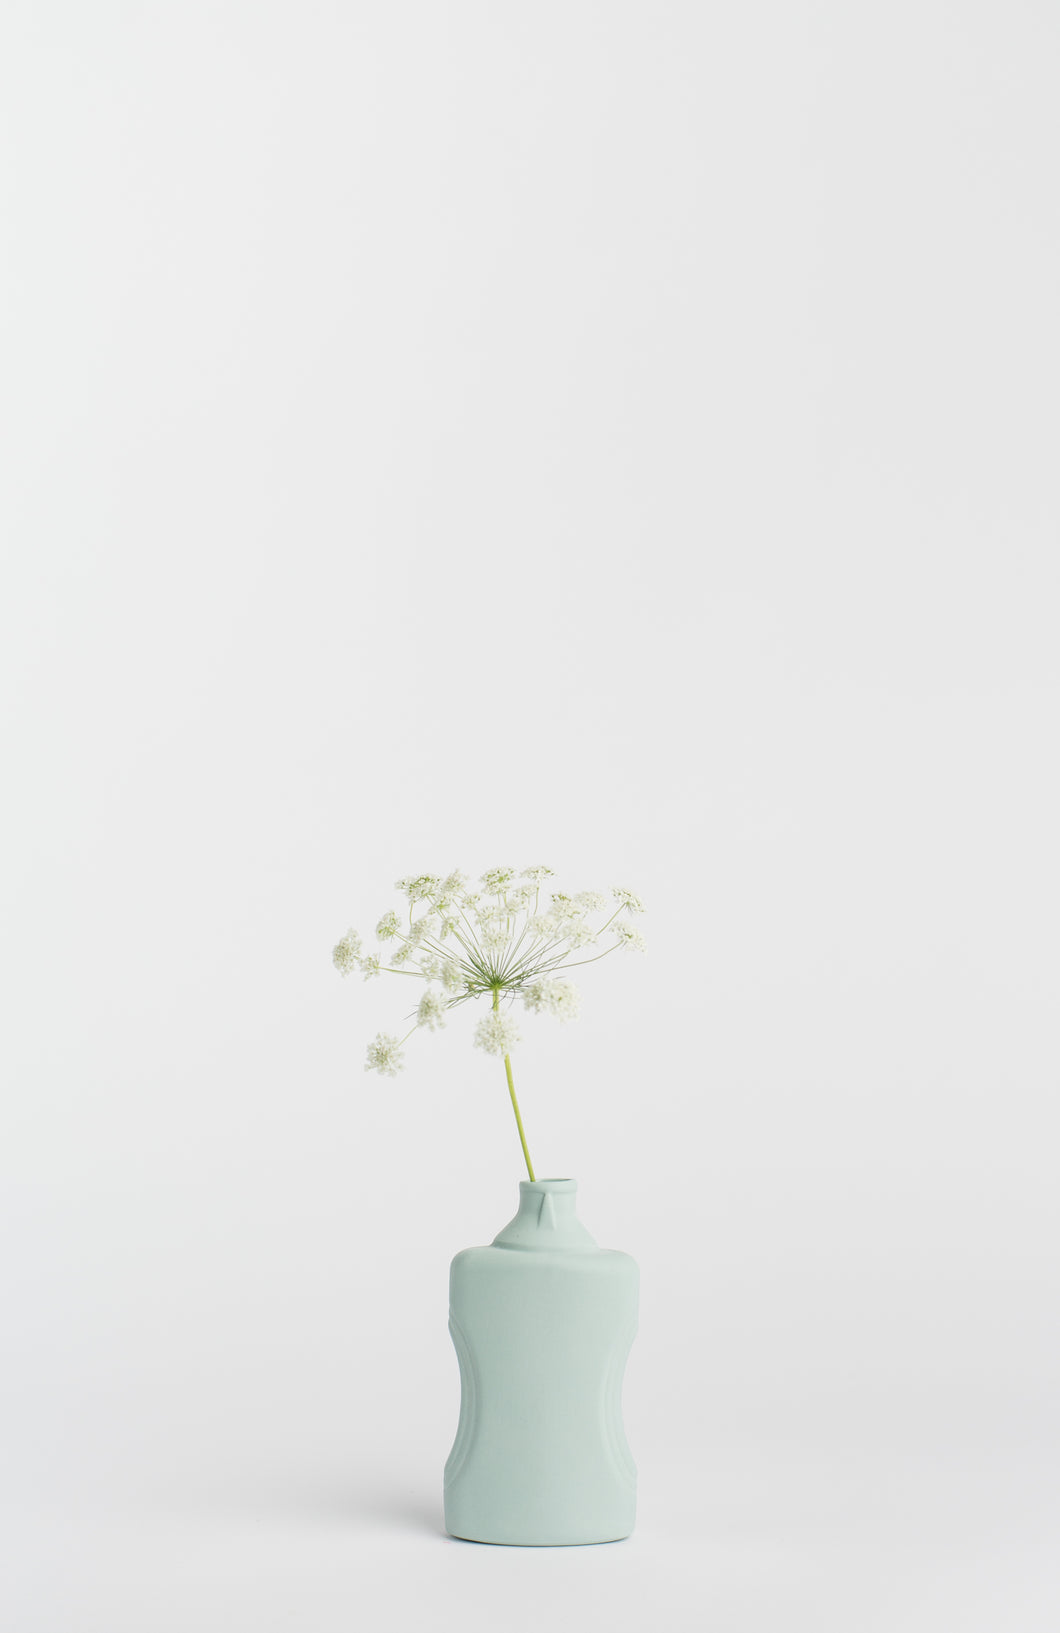 Vaso in Porcellana #21 Dusty Mint - Foekje Fleur